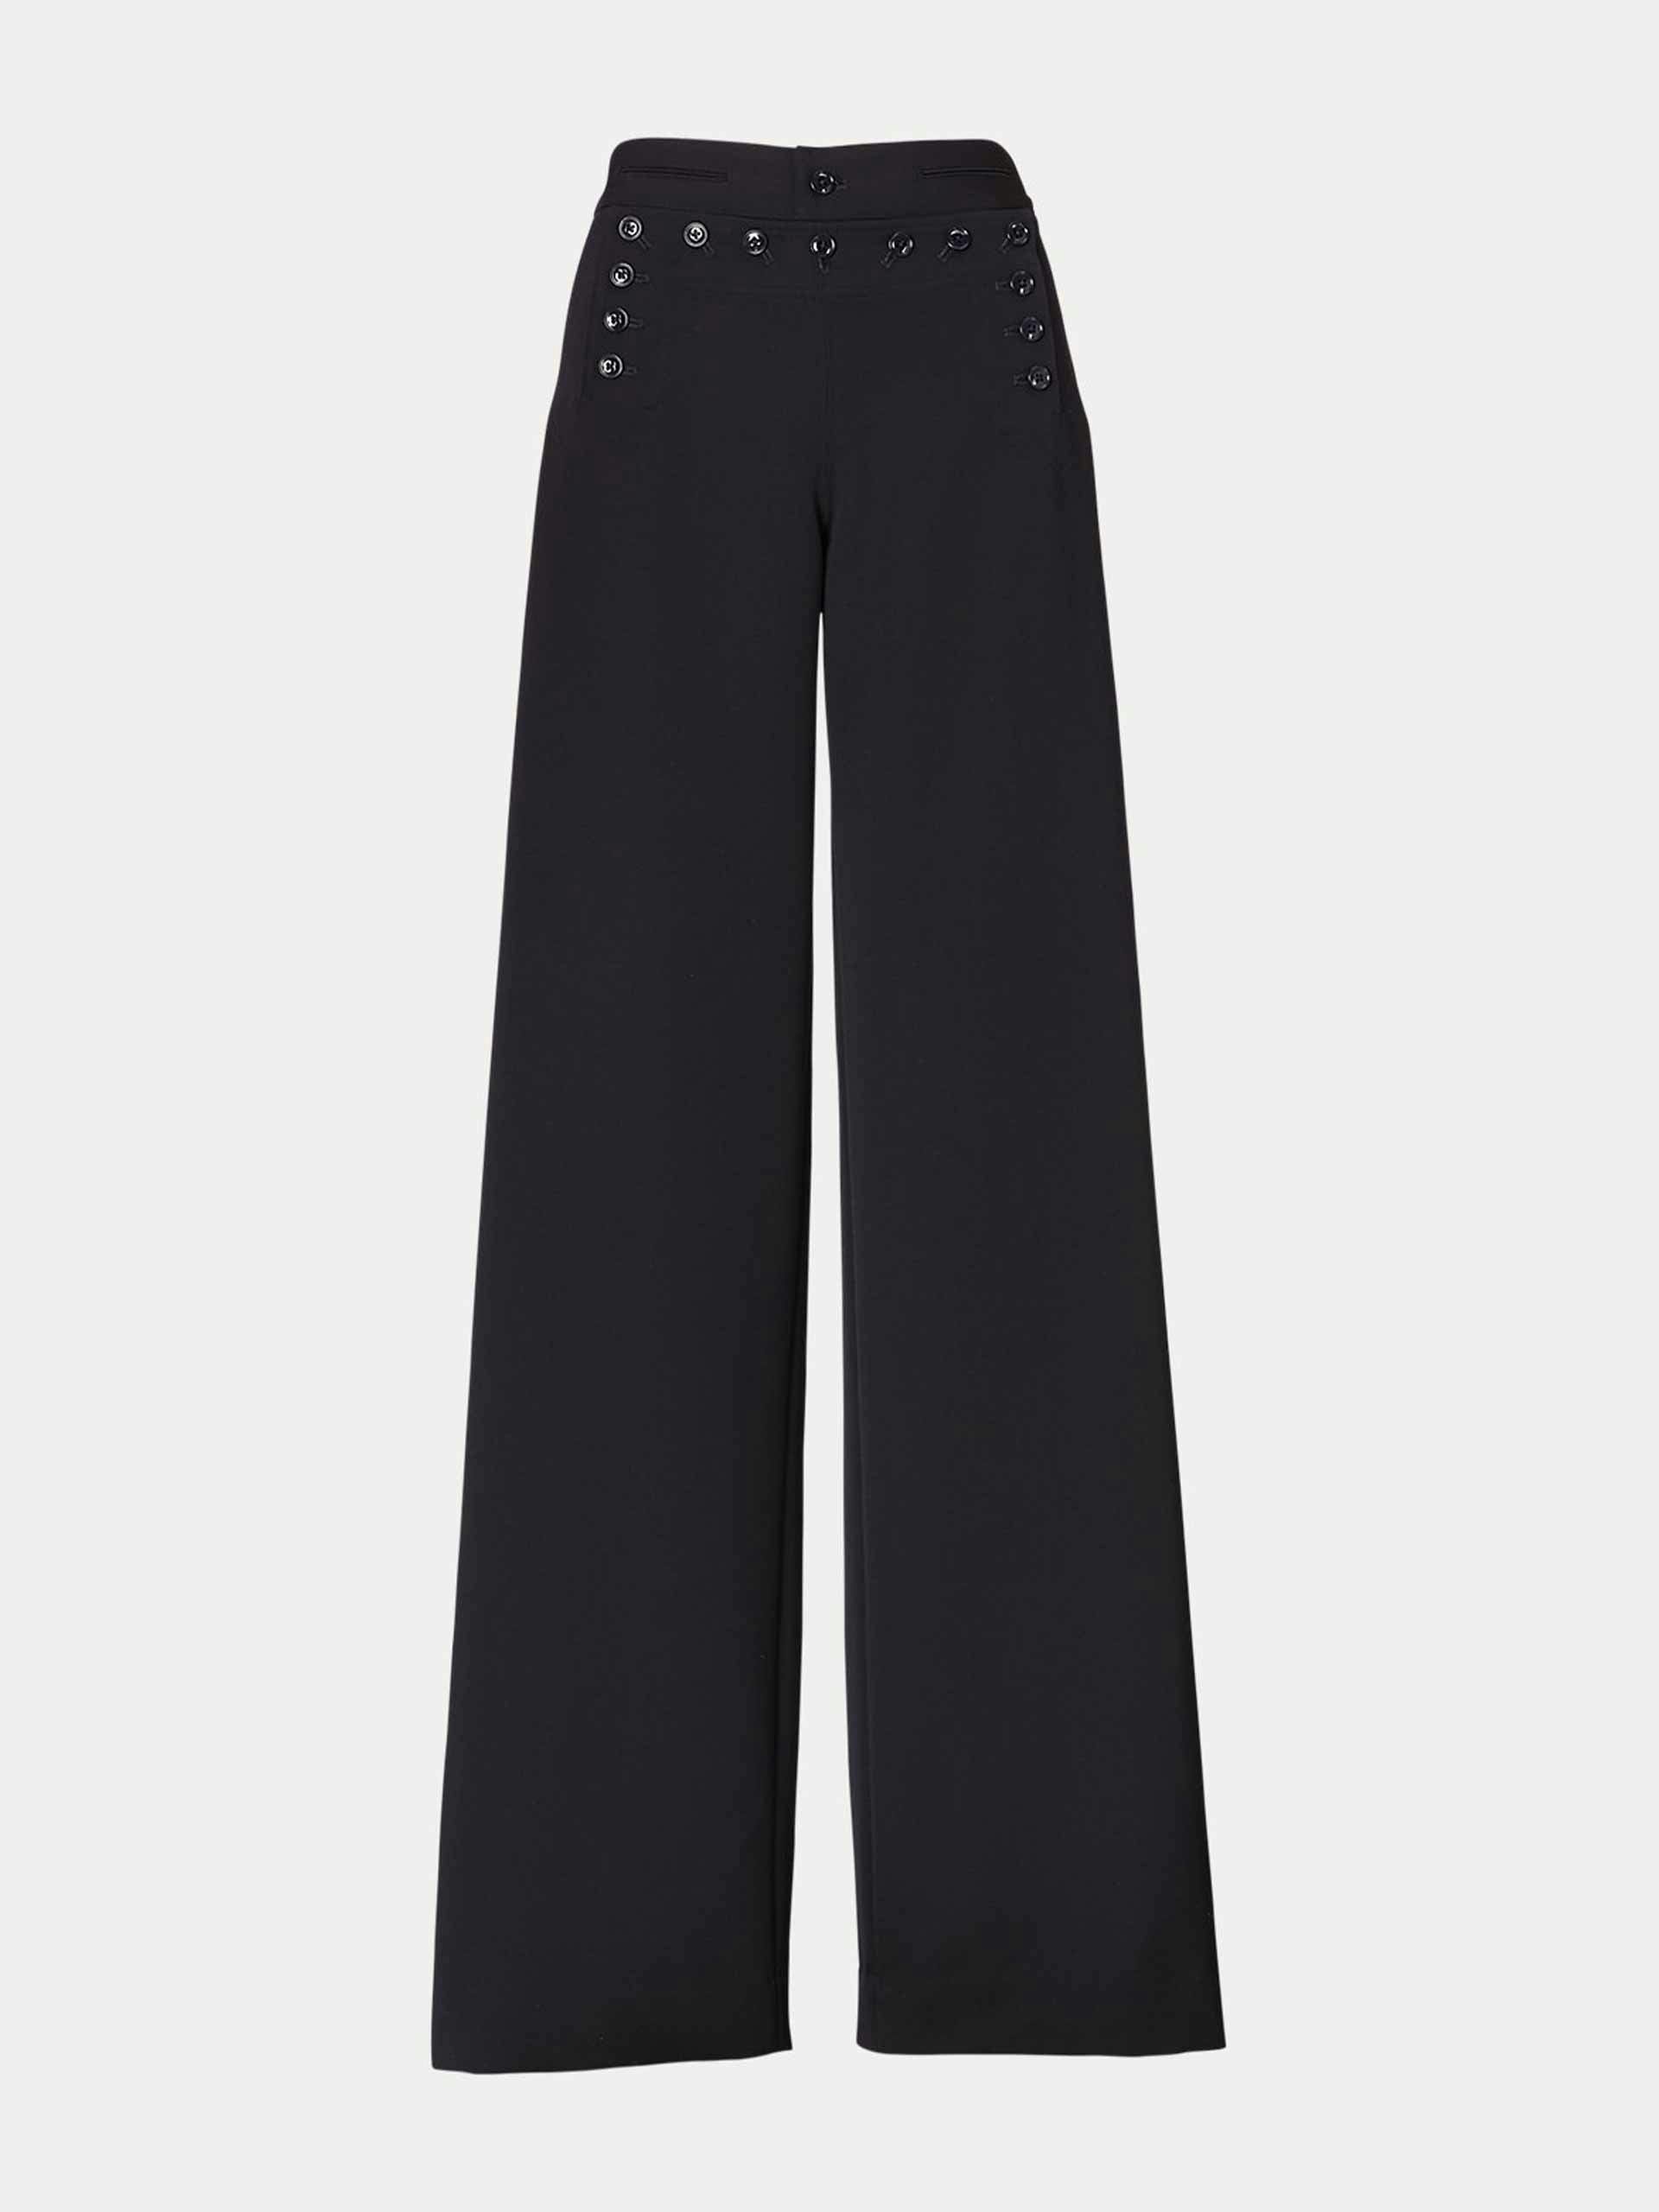 Black sailor trousers